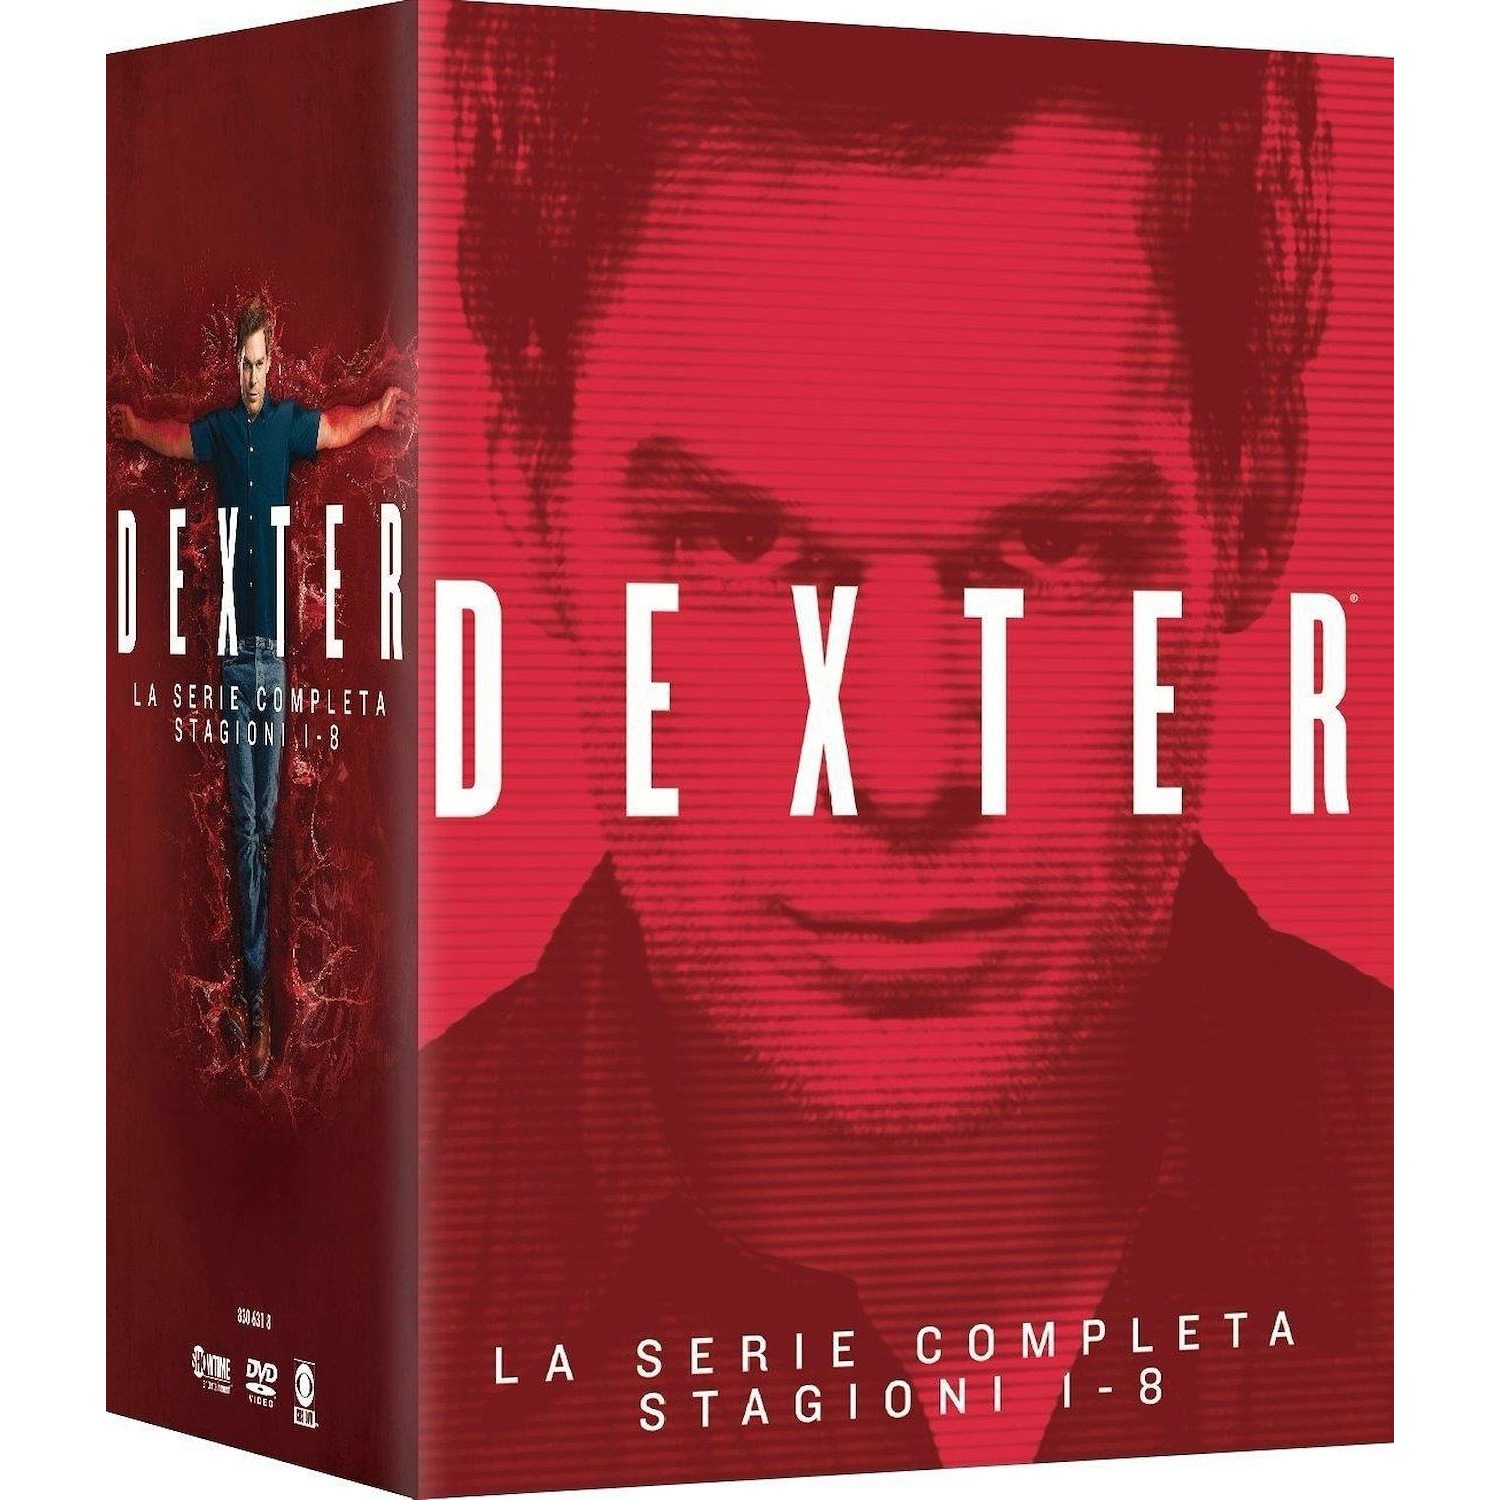 Immagine per Serie TV DVD Dexter 1-8 - La Serie completa da DIMOStore